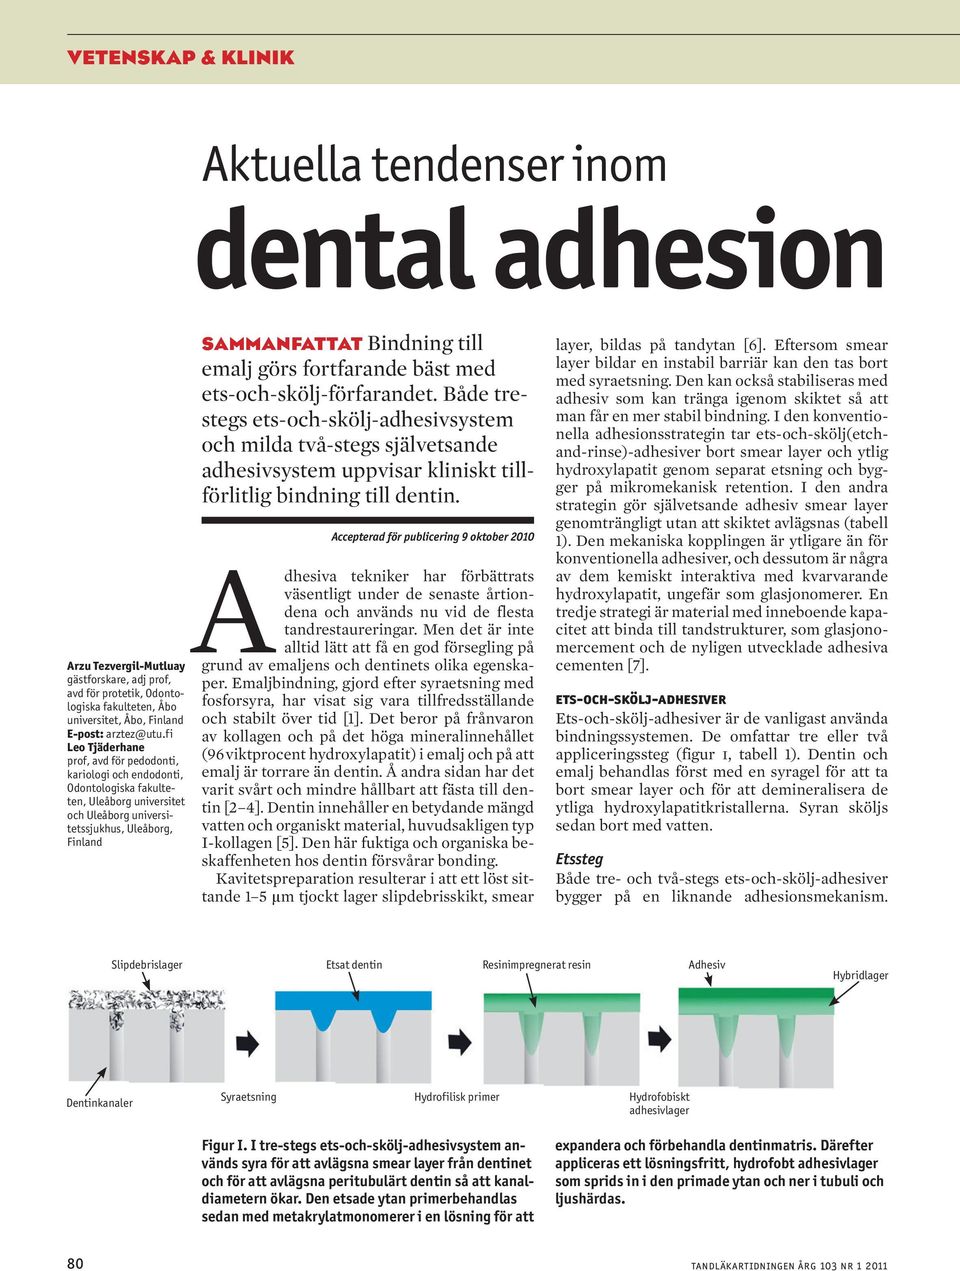 görs fortfarande bäst med ets-och-skölj-förfarandet. Både trestegs ets-och-skölj-adhesivsystem och milda två-stegs självetsande adhesivsystem uppvisar kliniskt tillförlitlig bindning till dentin.